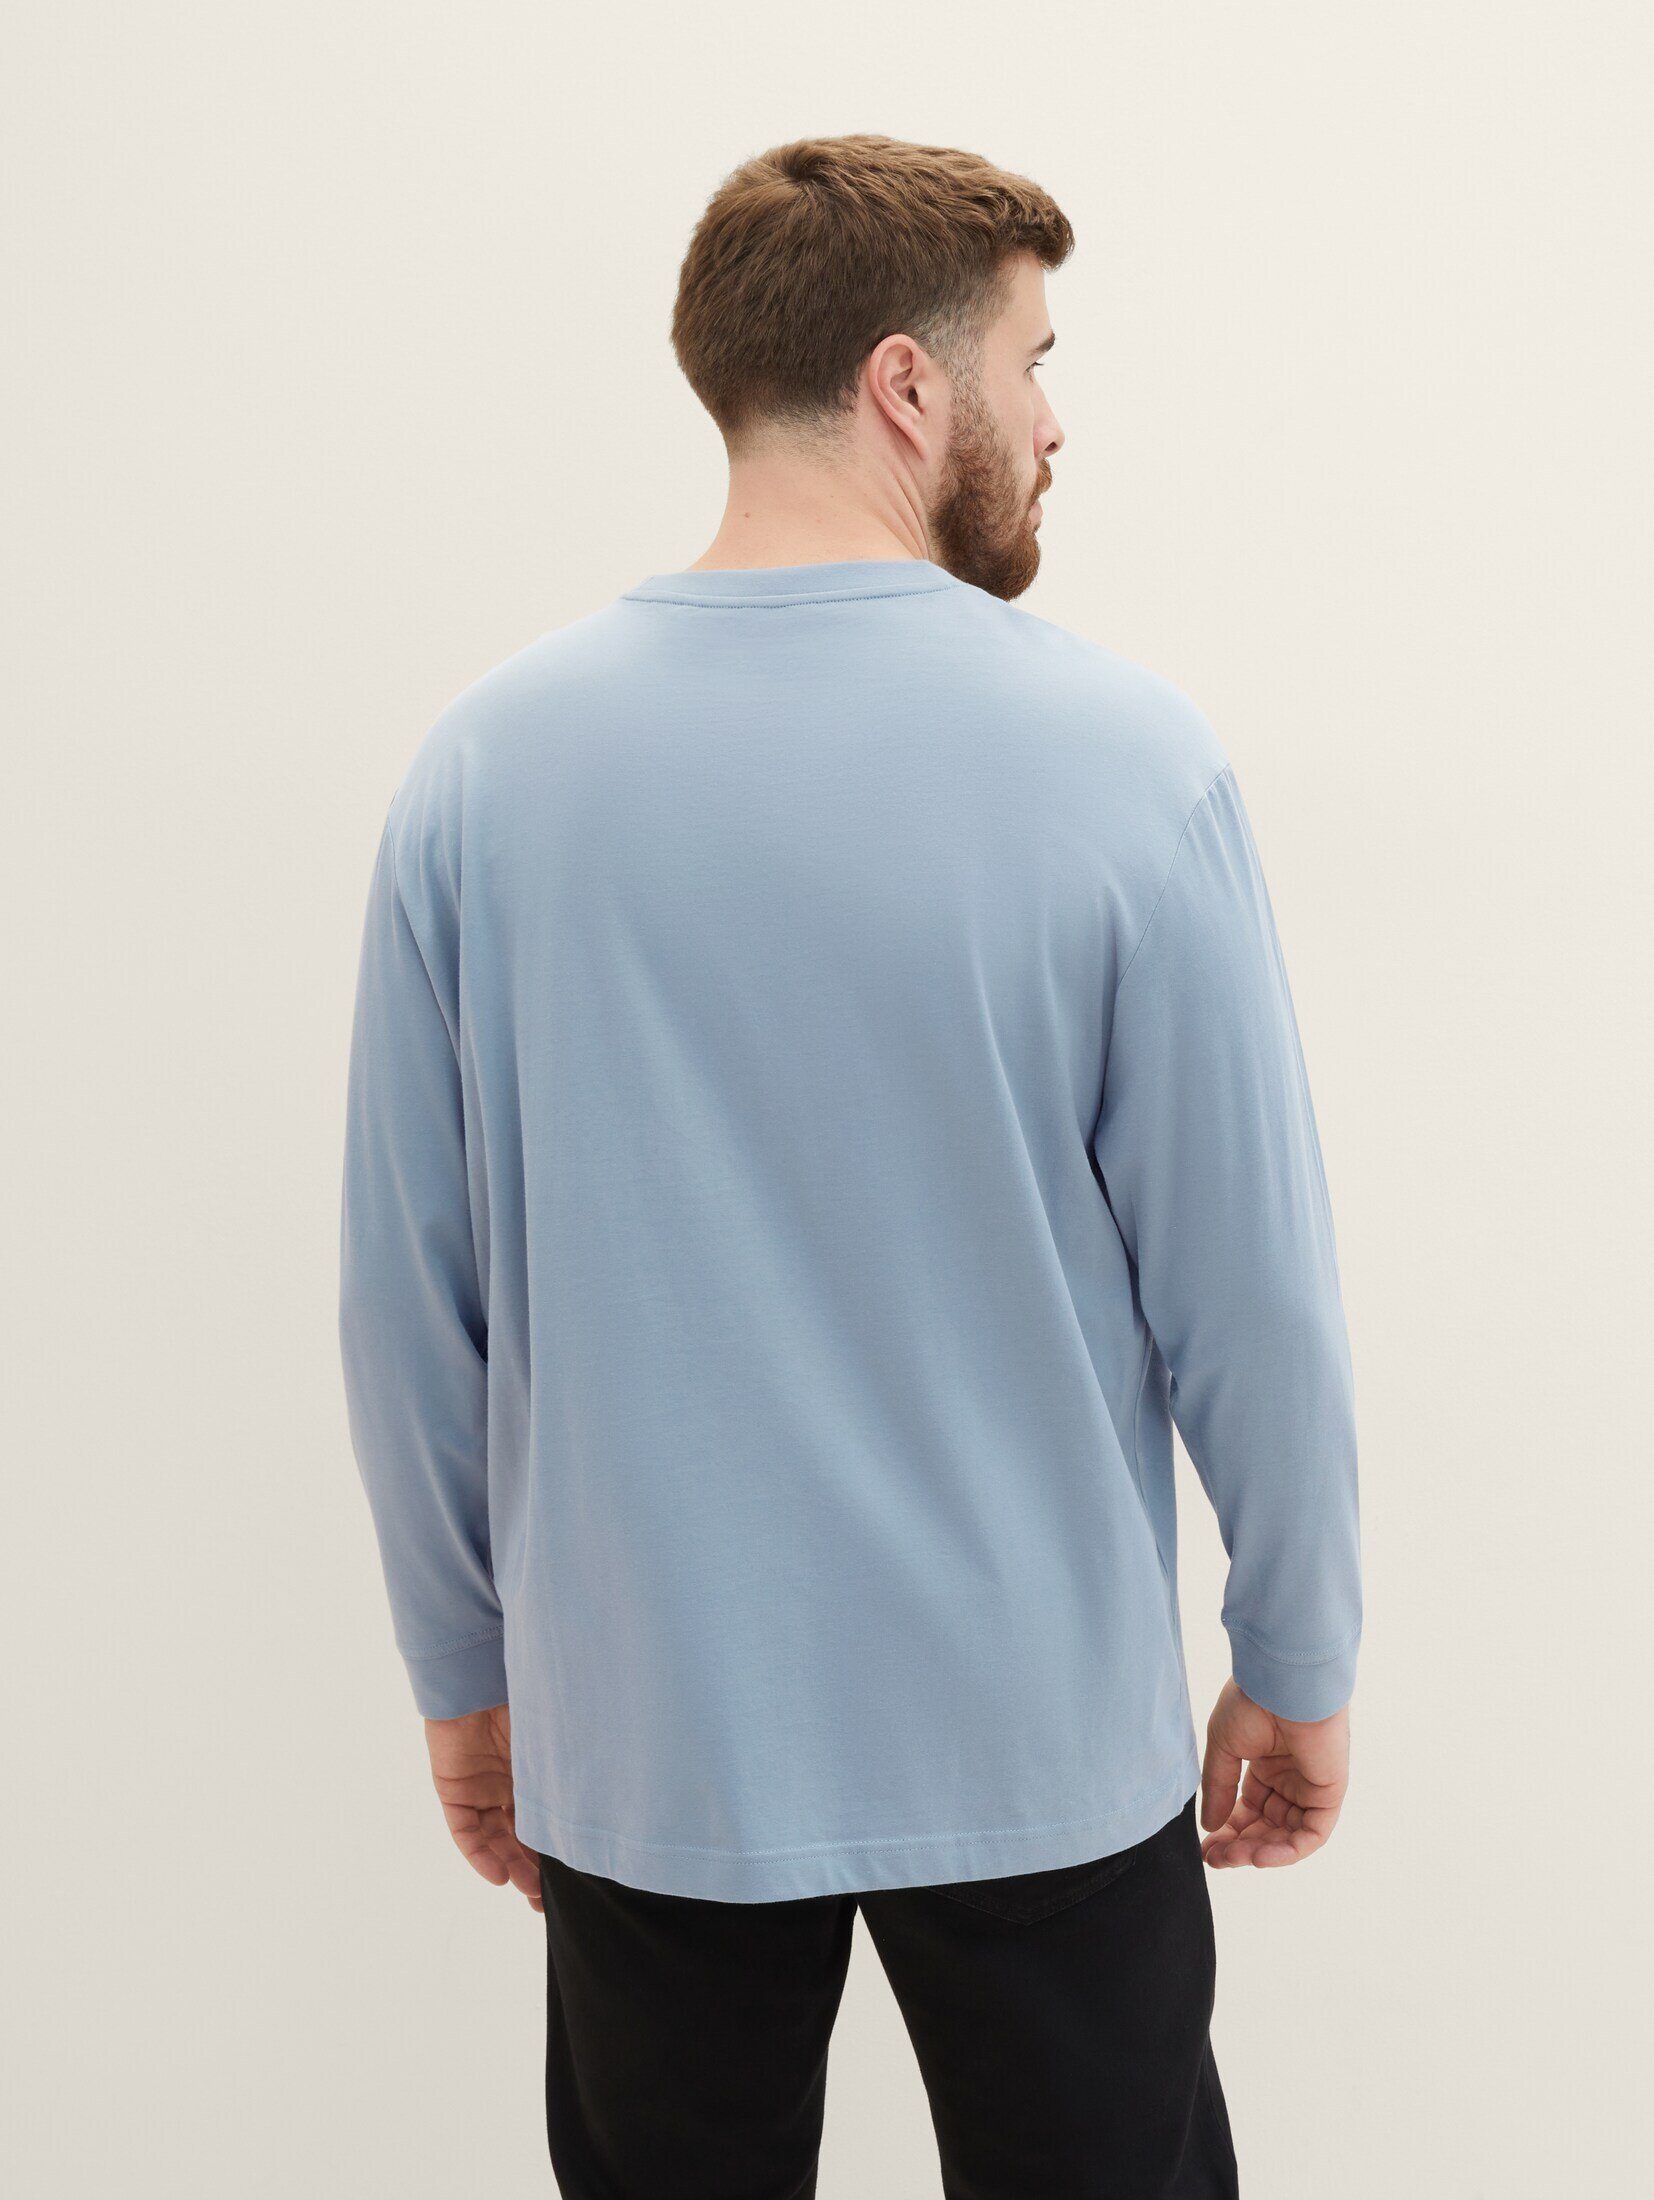 TOM TAILOR PLUS Plus T-Shirt mint Bio-Baumwolle Langarmshirt grey mit 